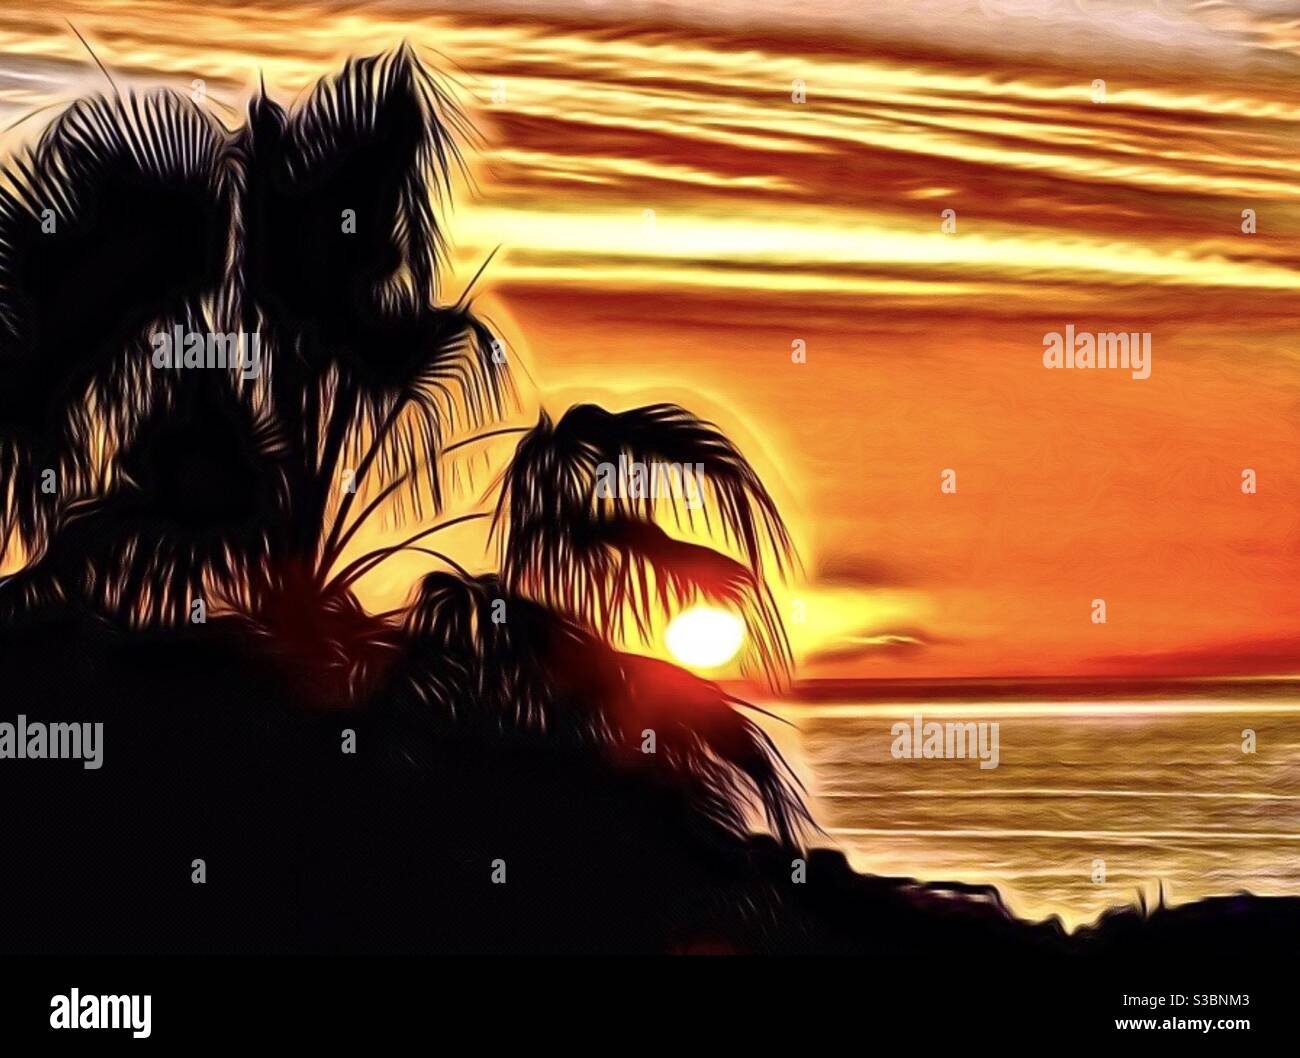 Fotokunst Bild von einem tropischen Sonnenuntergang und Palmen In Silhouette Stockfoto